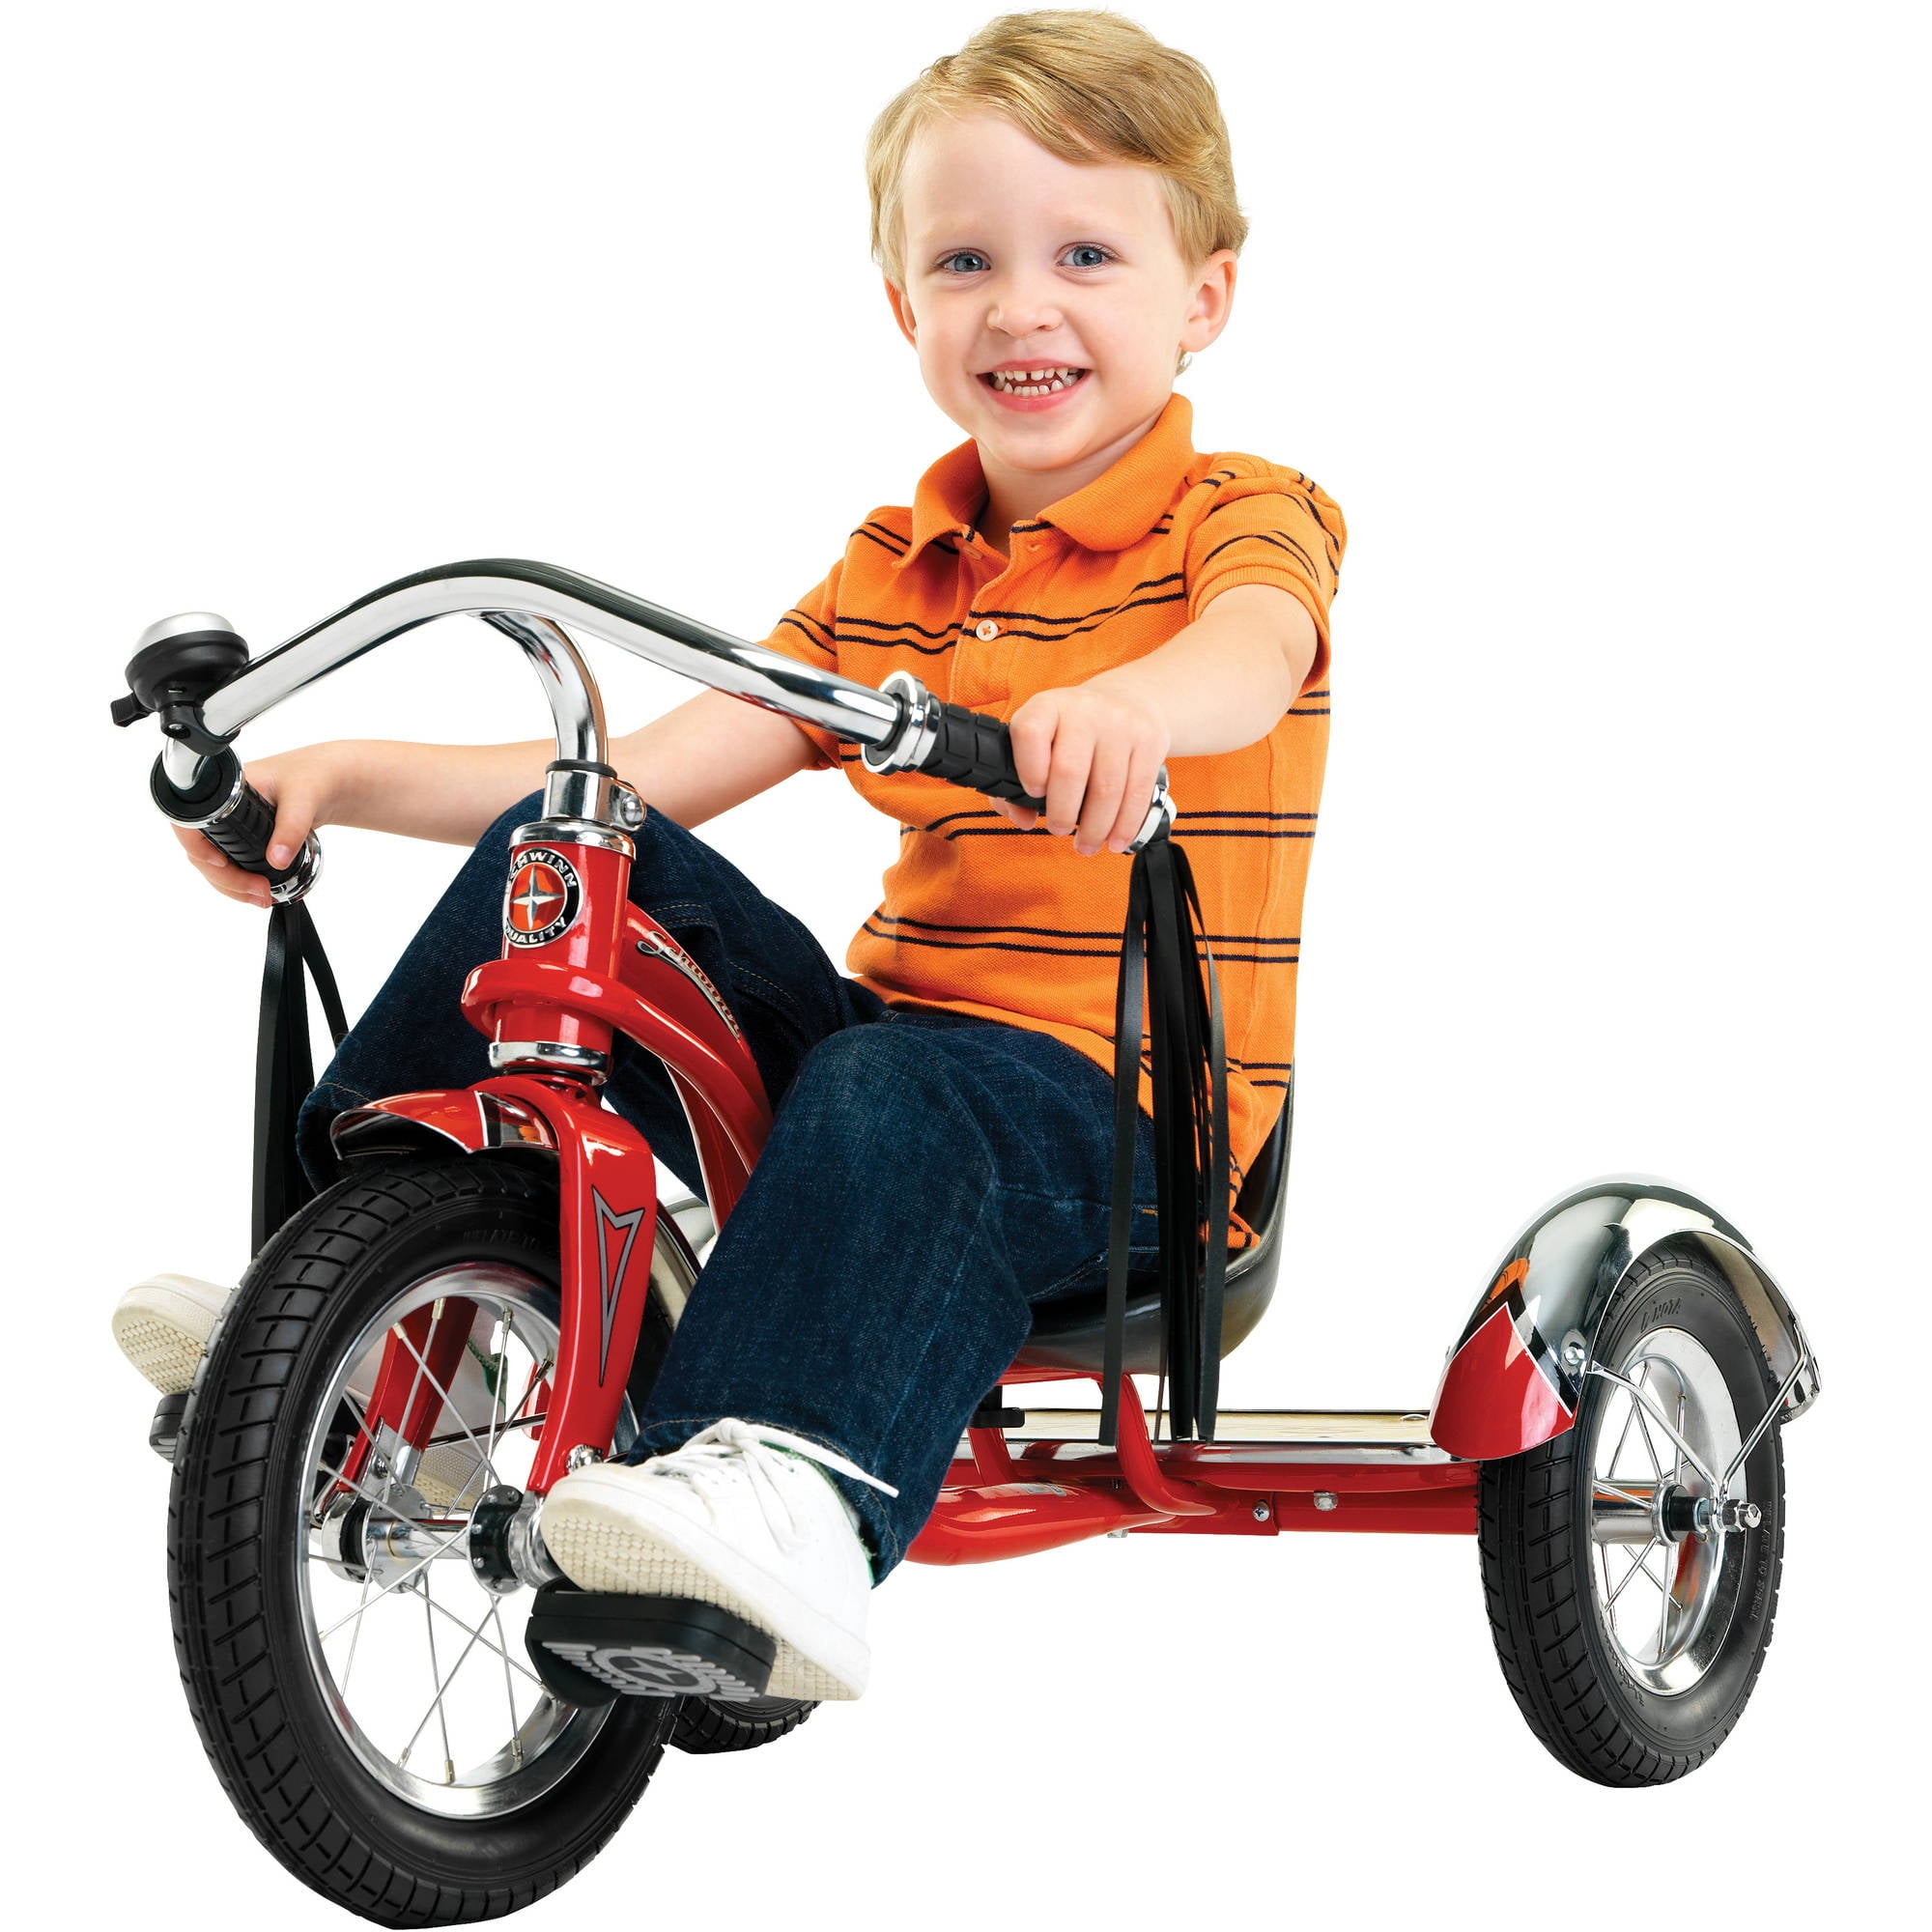 Trike Kids Bike Hot Bright Pink 12" wheel size Schwinn Roadster Tricycle 